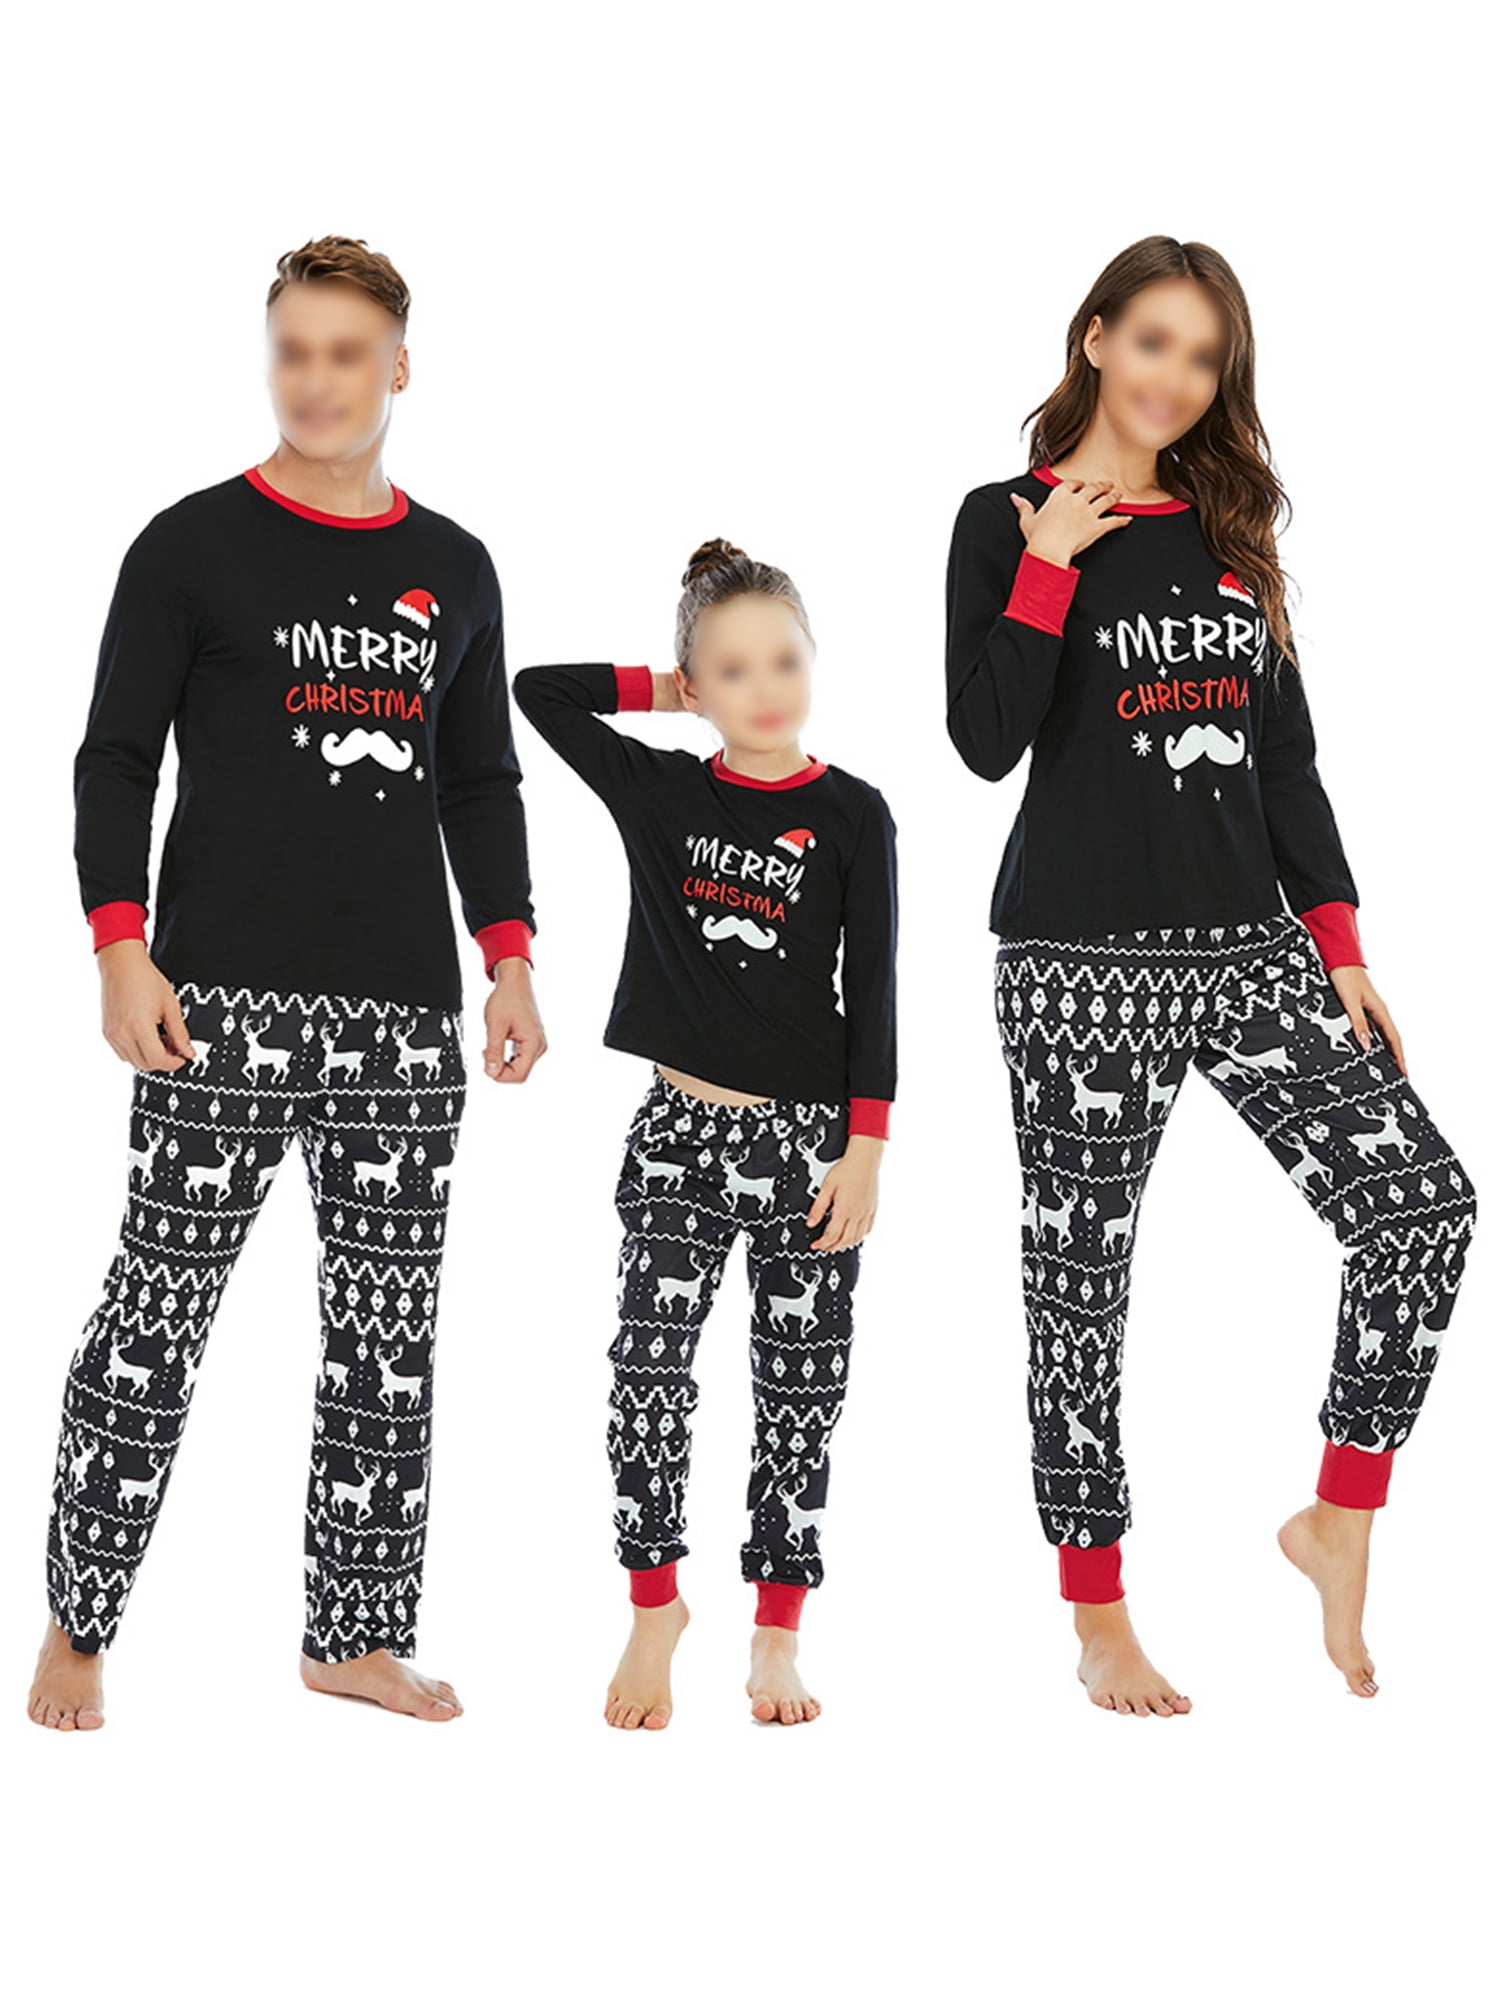 Personalised Baby Tartan Pyjamas Couples Christmas Pajamas I believe Matching Family Christmas Pyjamas Children's Custom Red PJ's Clothing Unisex Kids Clothing Pyjamas & Robes Pyjamas 